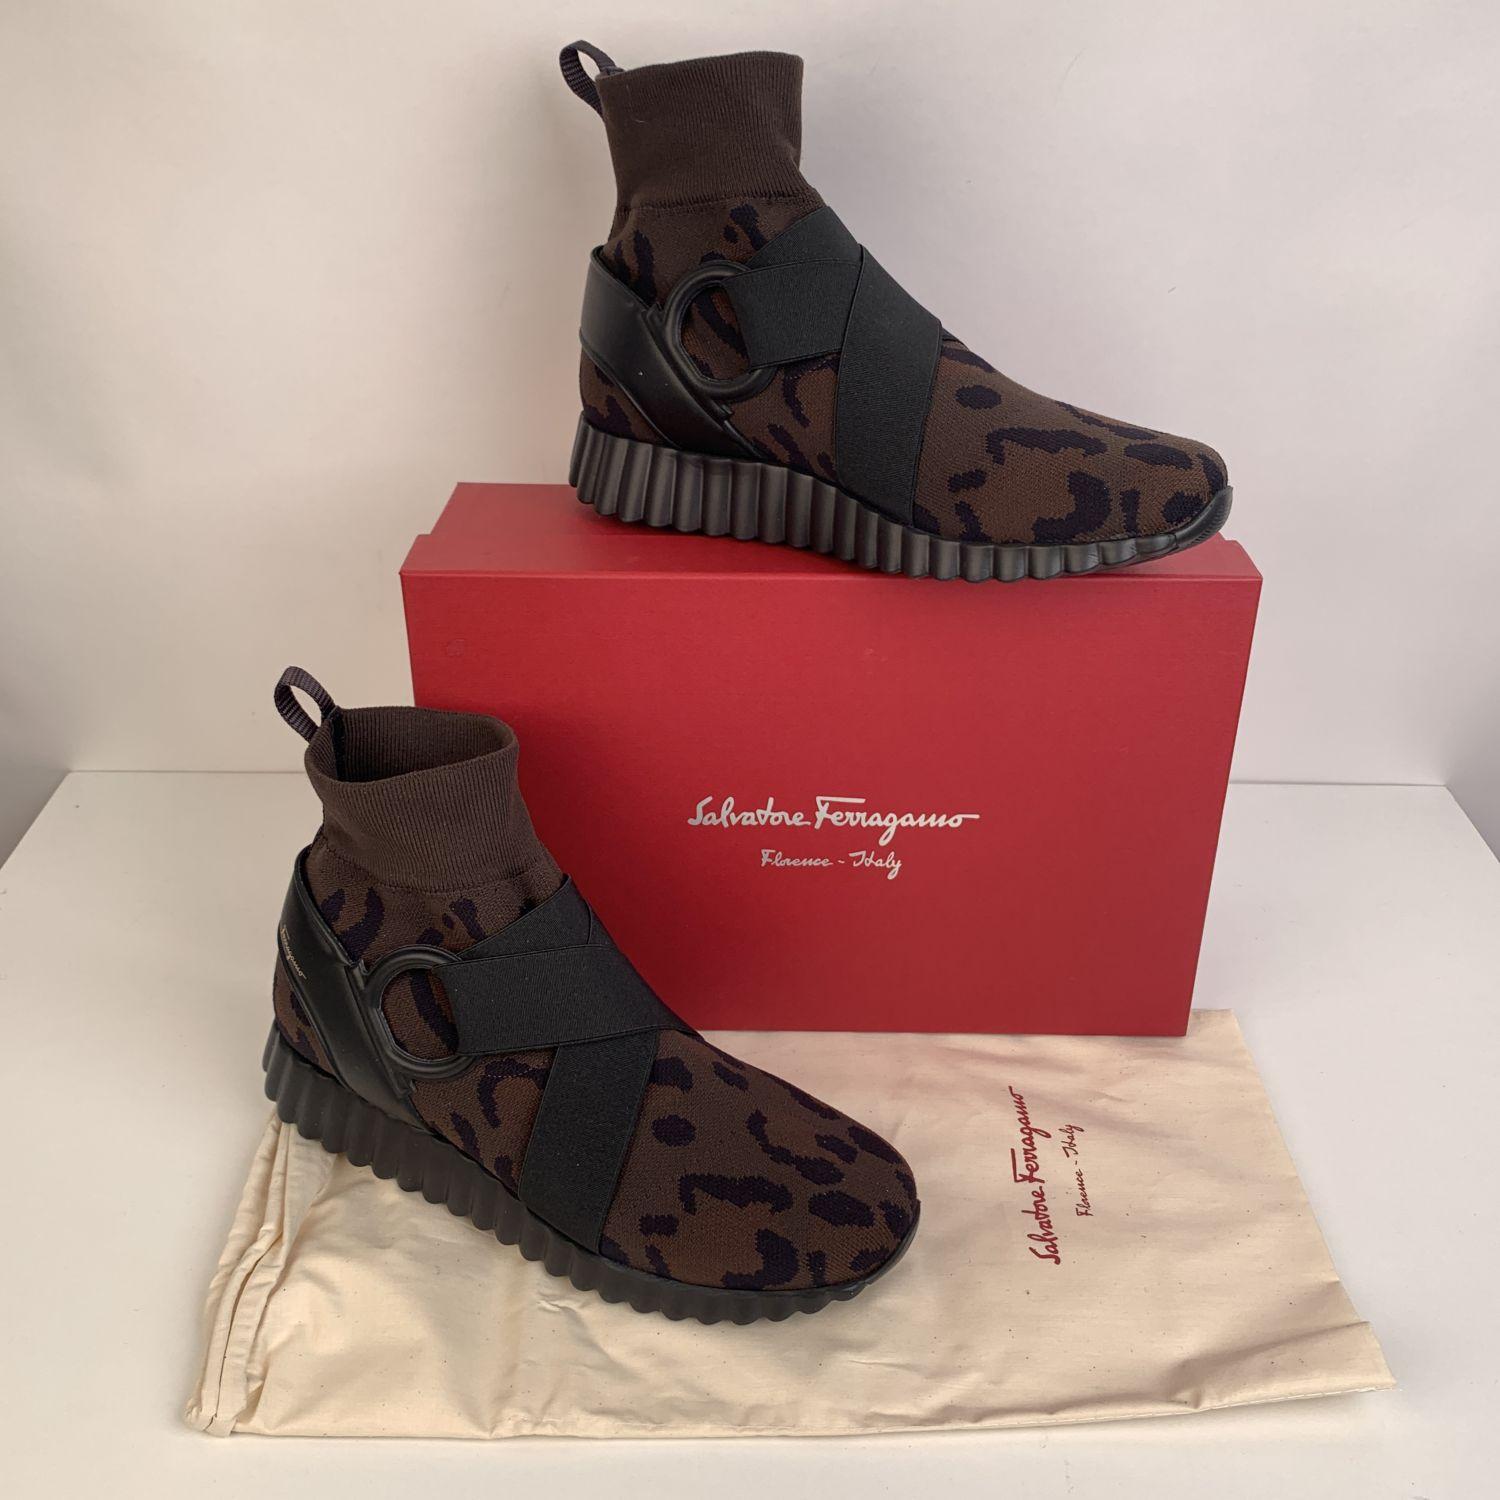 Salvatore Ferragamo Leopard Noto Sock Sneakers Shoes Size 9C 39.5C In New Condition In Rome, Rome